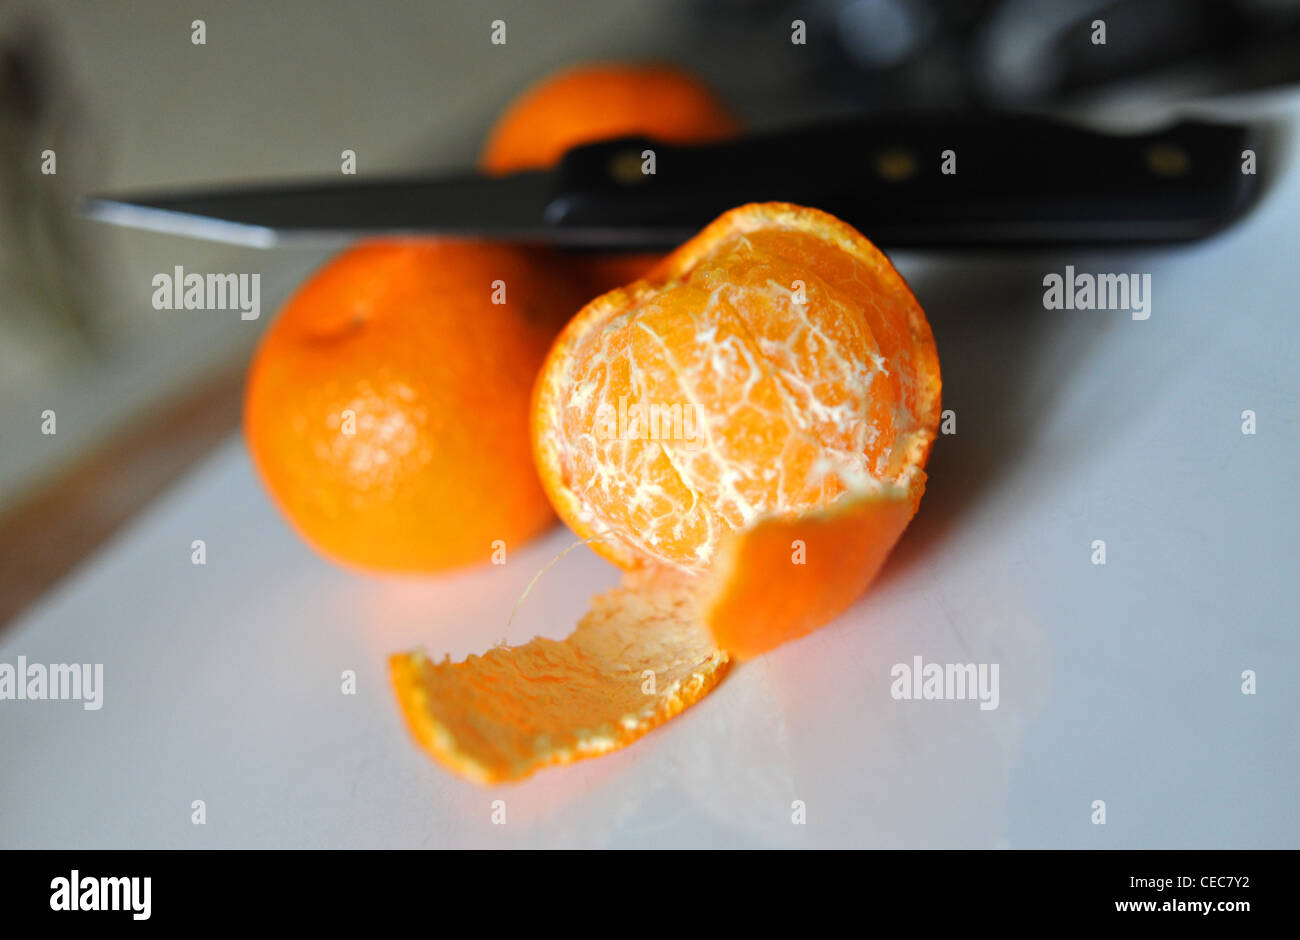 Sbucciate pelle off satsuma un frutto ricco di vitamina C per una buona salute Foto Stock